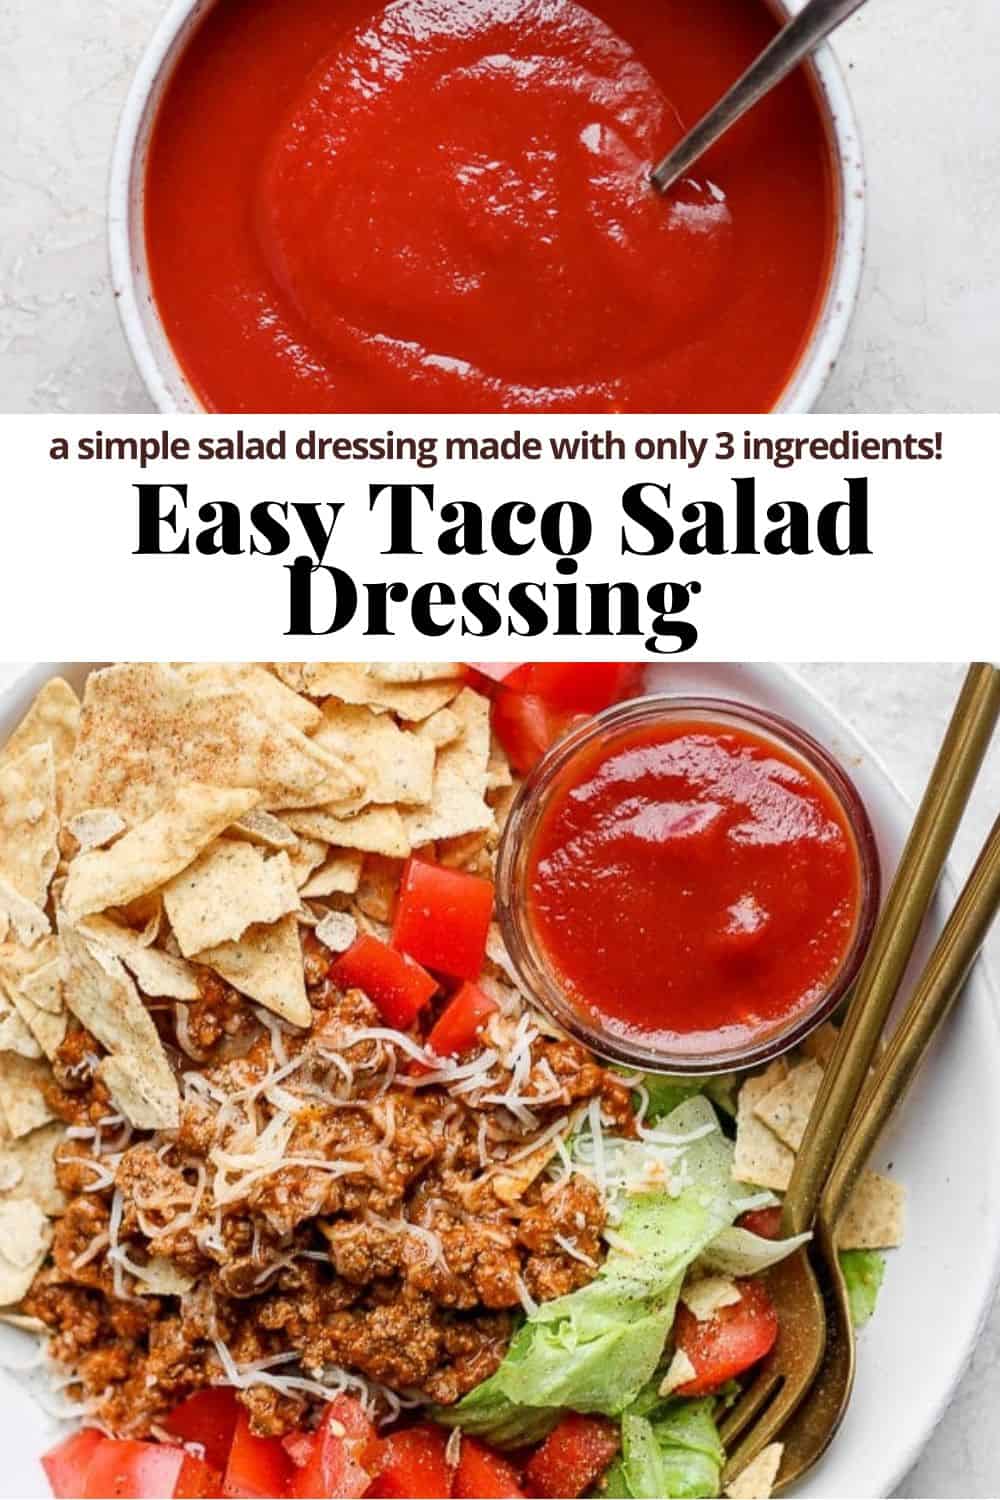 Pinterest image for taco salad dressing.